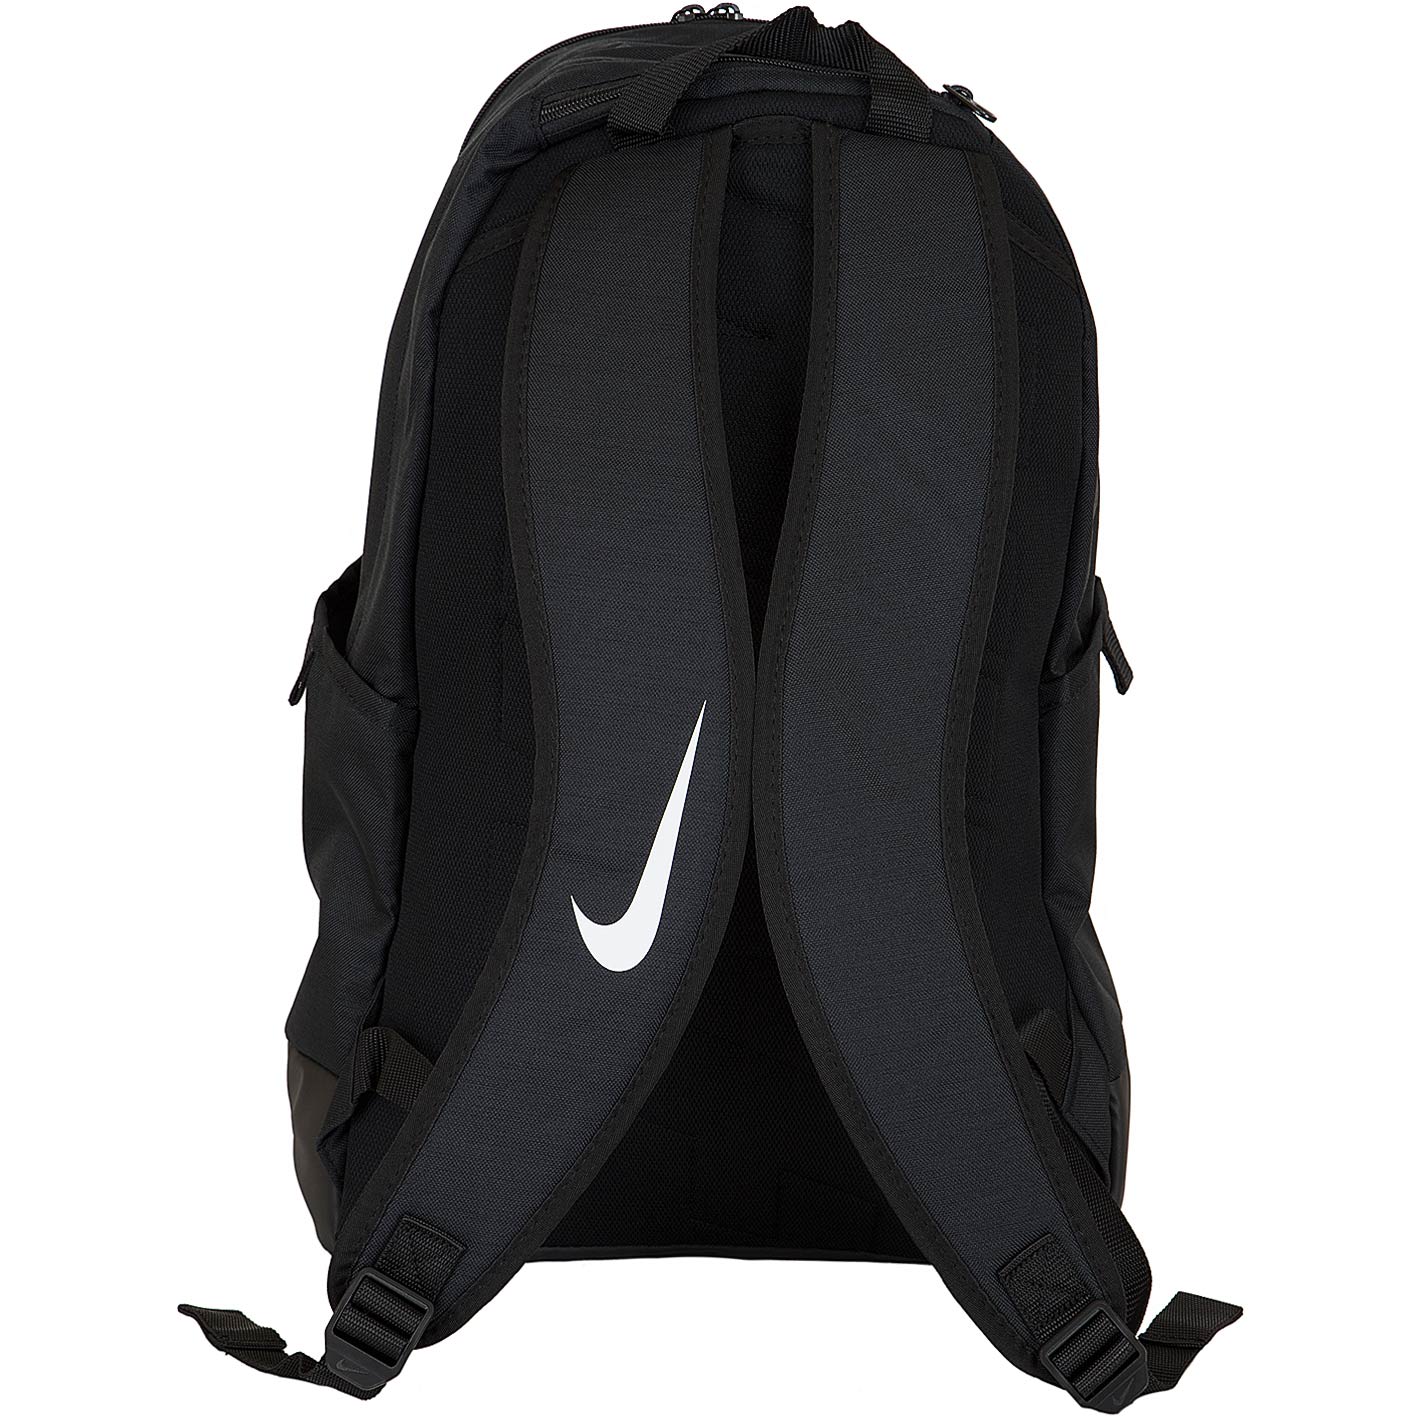 ☆ Nike Rucksack Brasilia XL schwarz/weiß - hier bestellen!